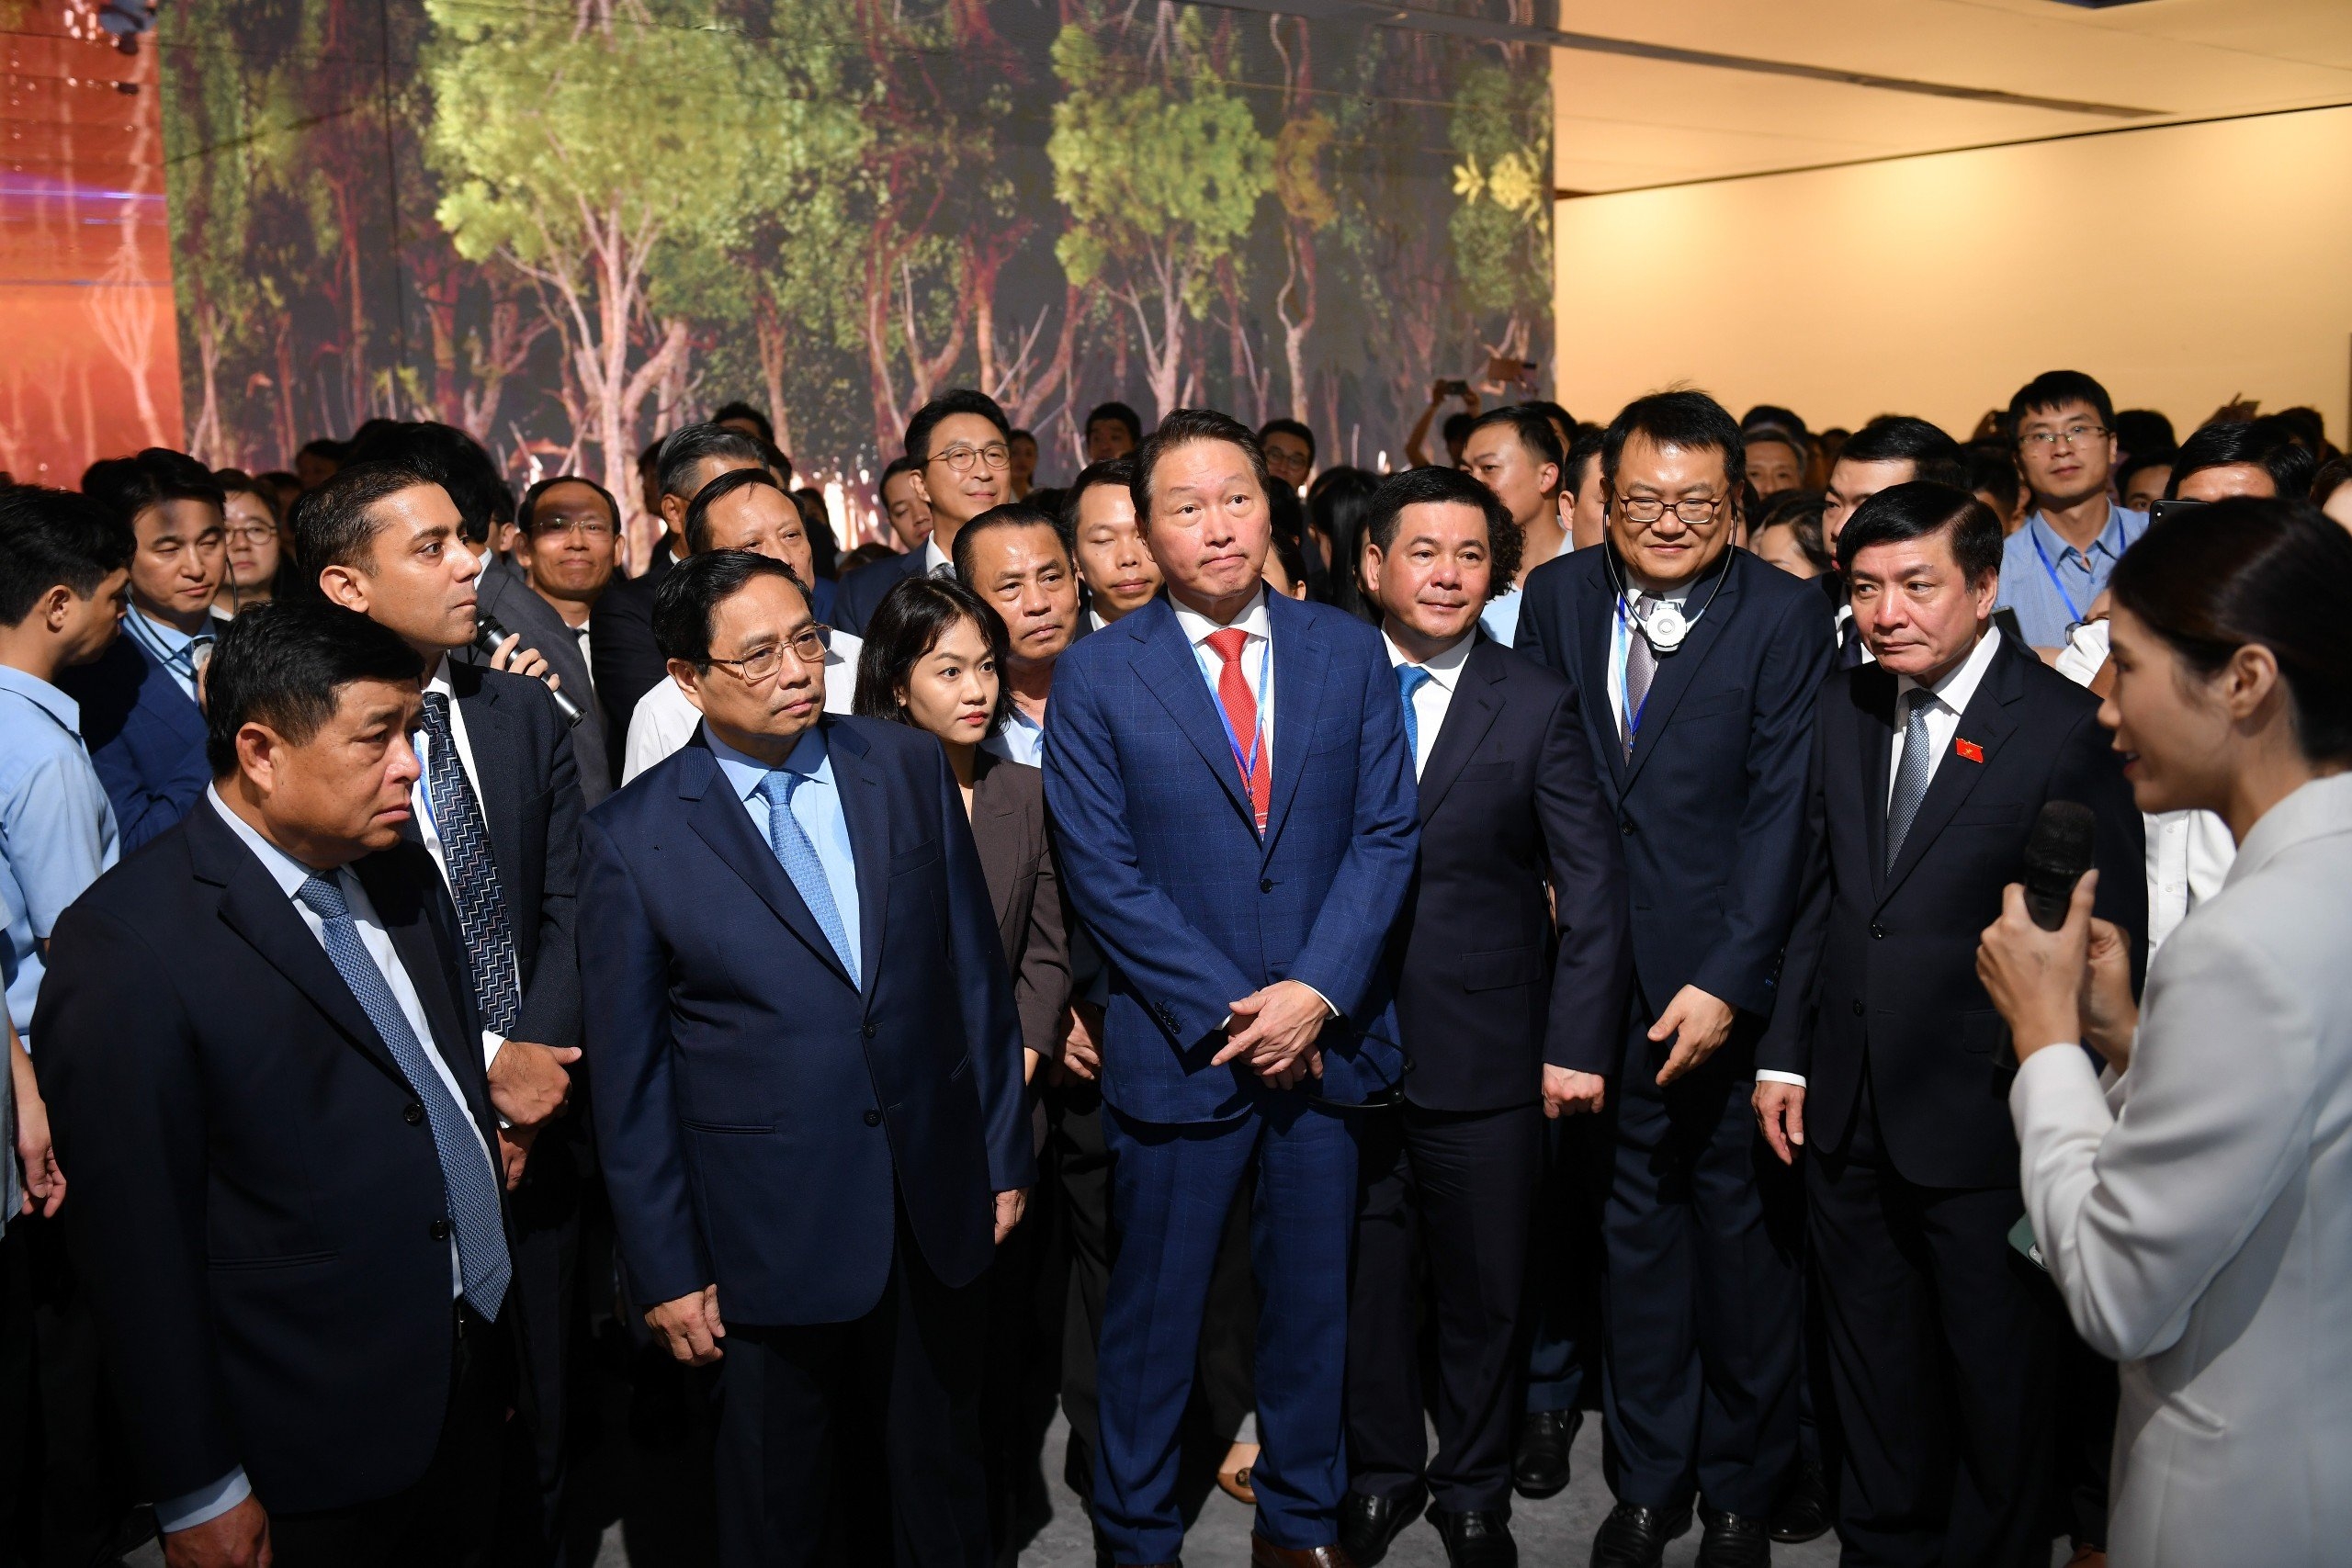 Thủ tướng Phạm Minh Chính: Việc đưa vào khai thác Trung tâm Đổi mới sáng tạo quốc gia tại Hòa Lạc có ý nghĩa to lớn trong phát triển hệ sinh thái khởi nghiệp